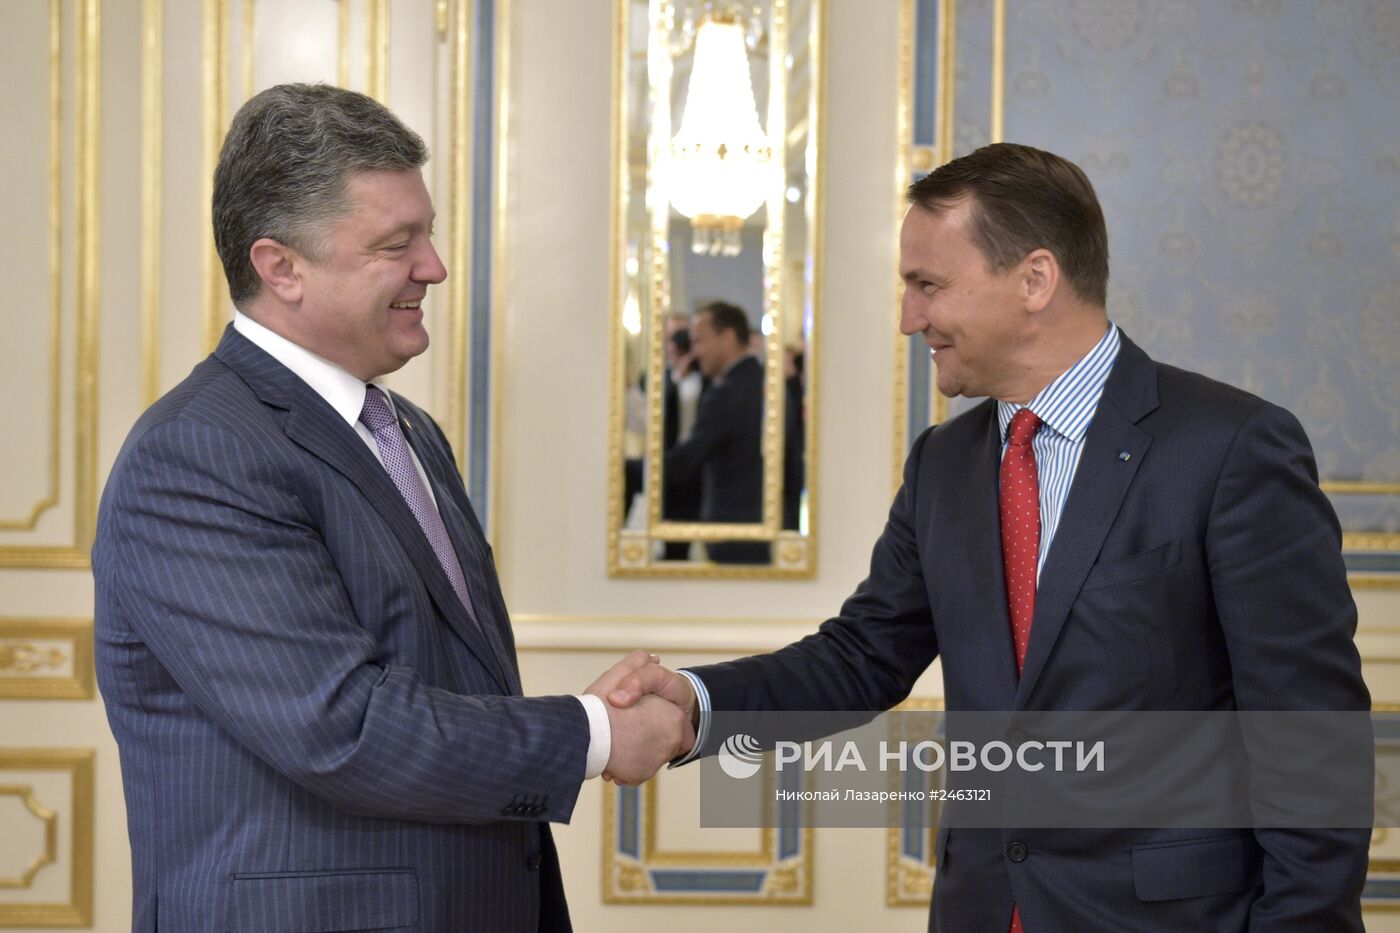 Президент Украины П.Порошенко провел встречу с главами МИД Польши, Латвии и Исландии